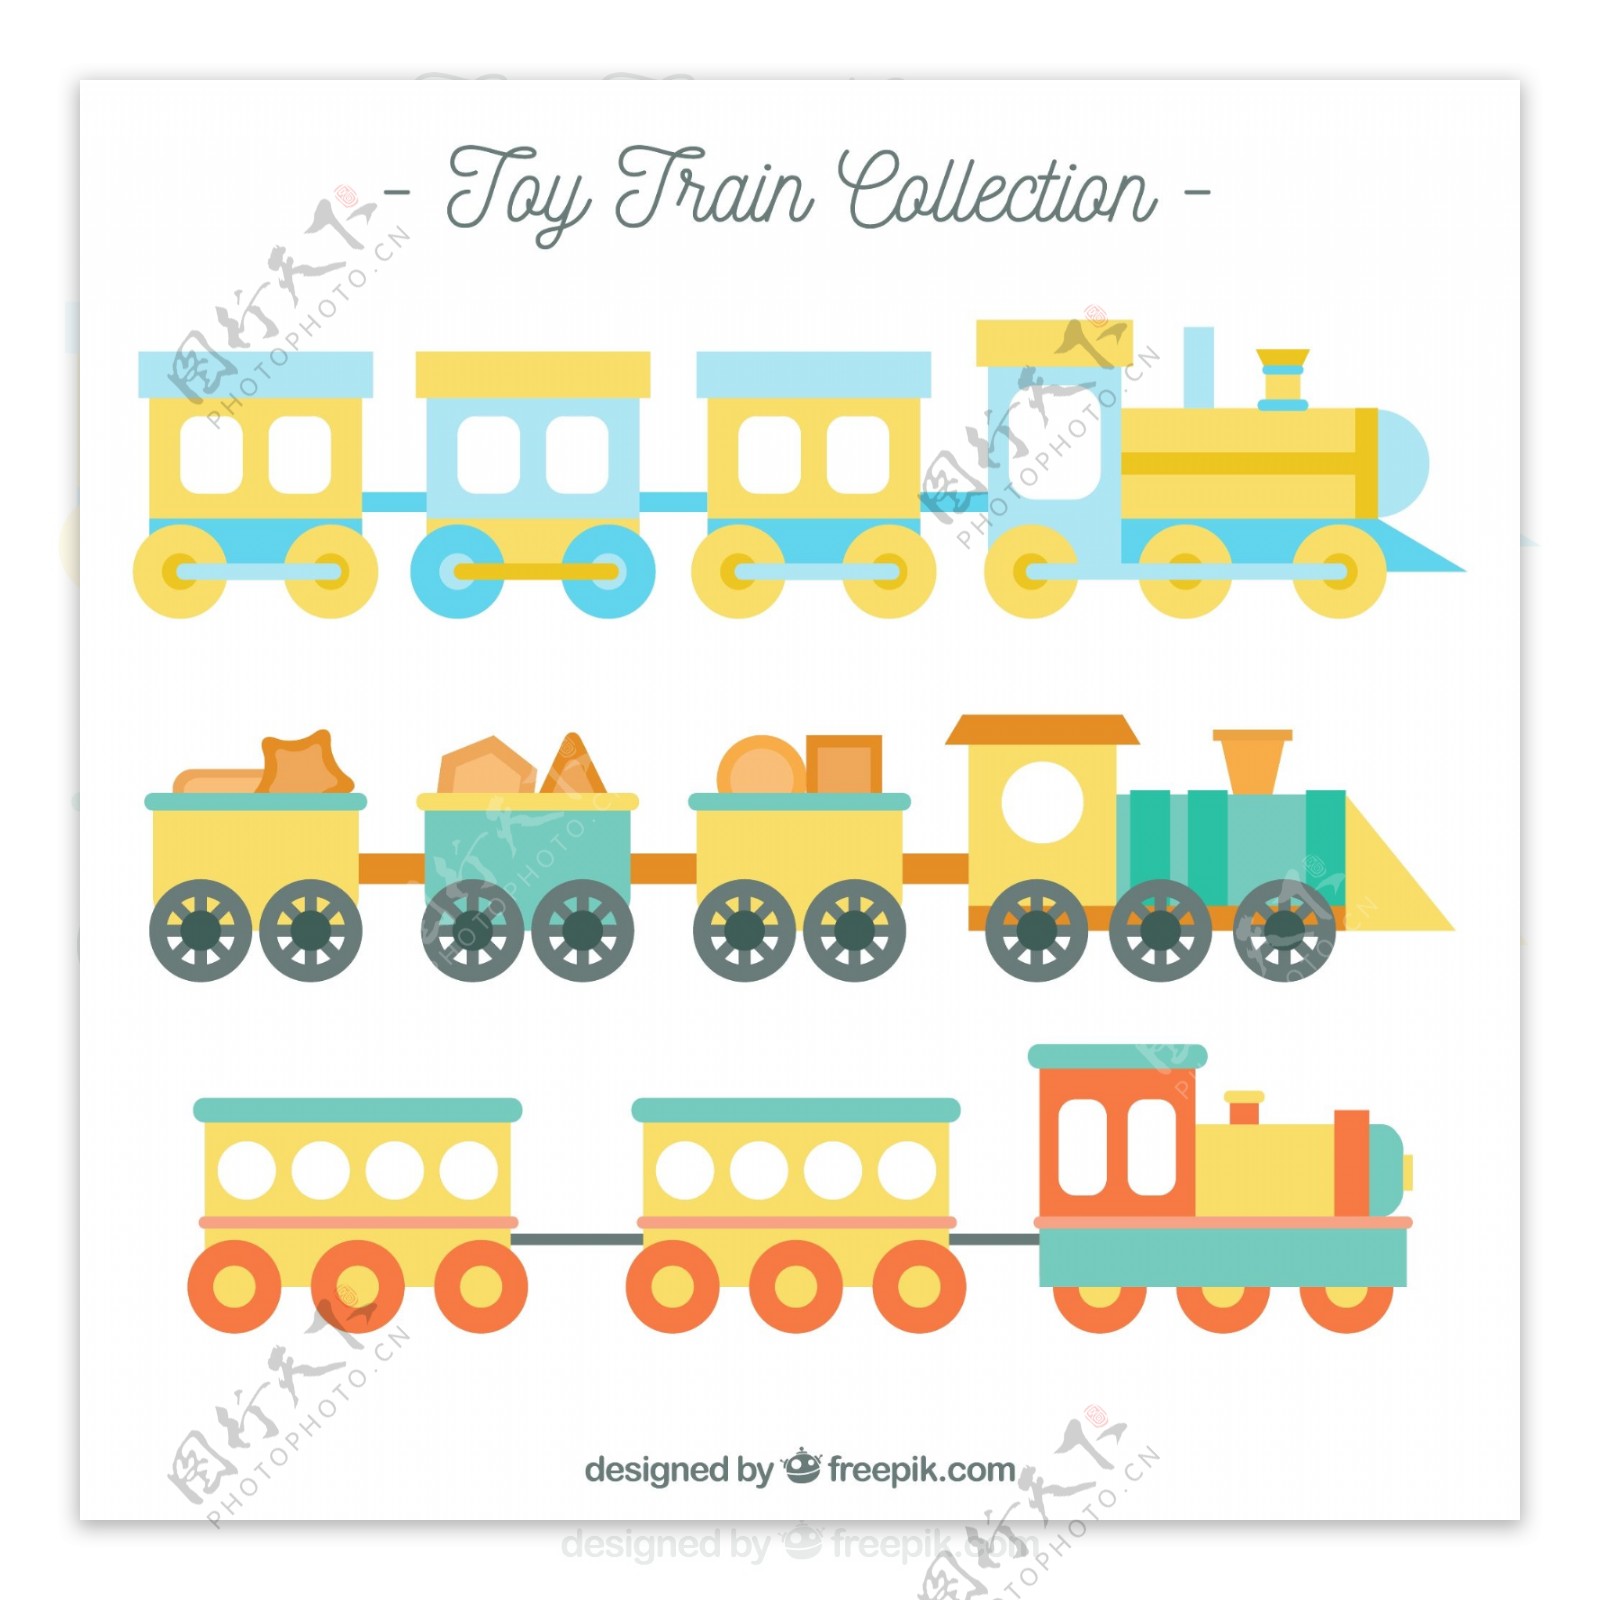 色彩柔和的玩具火车矢量素材